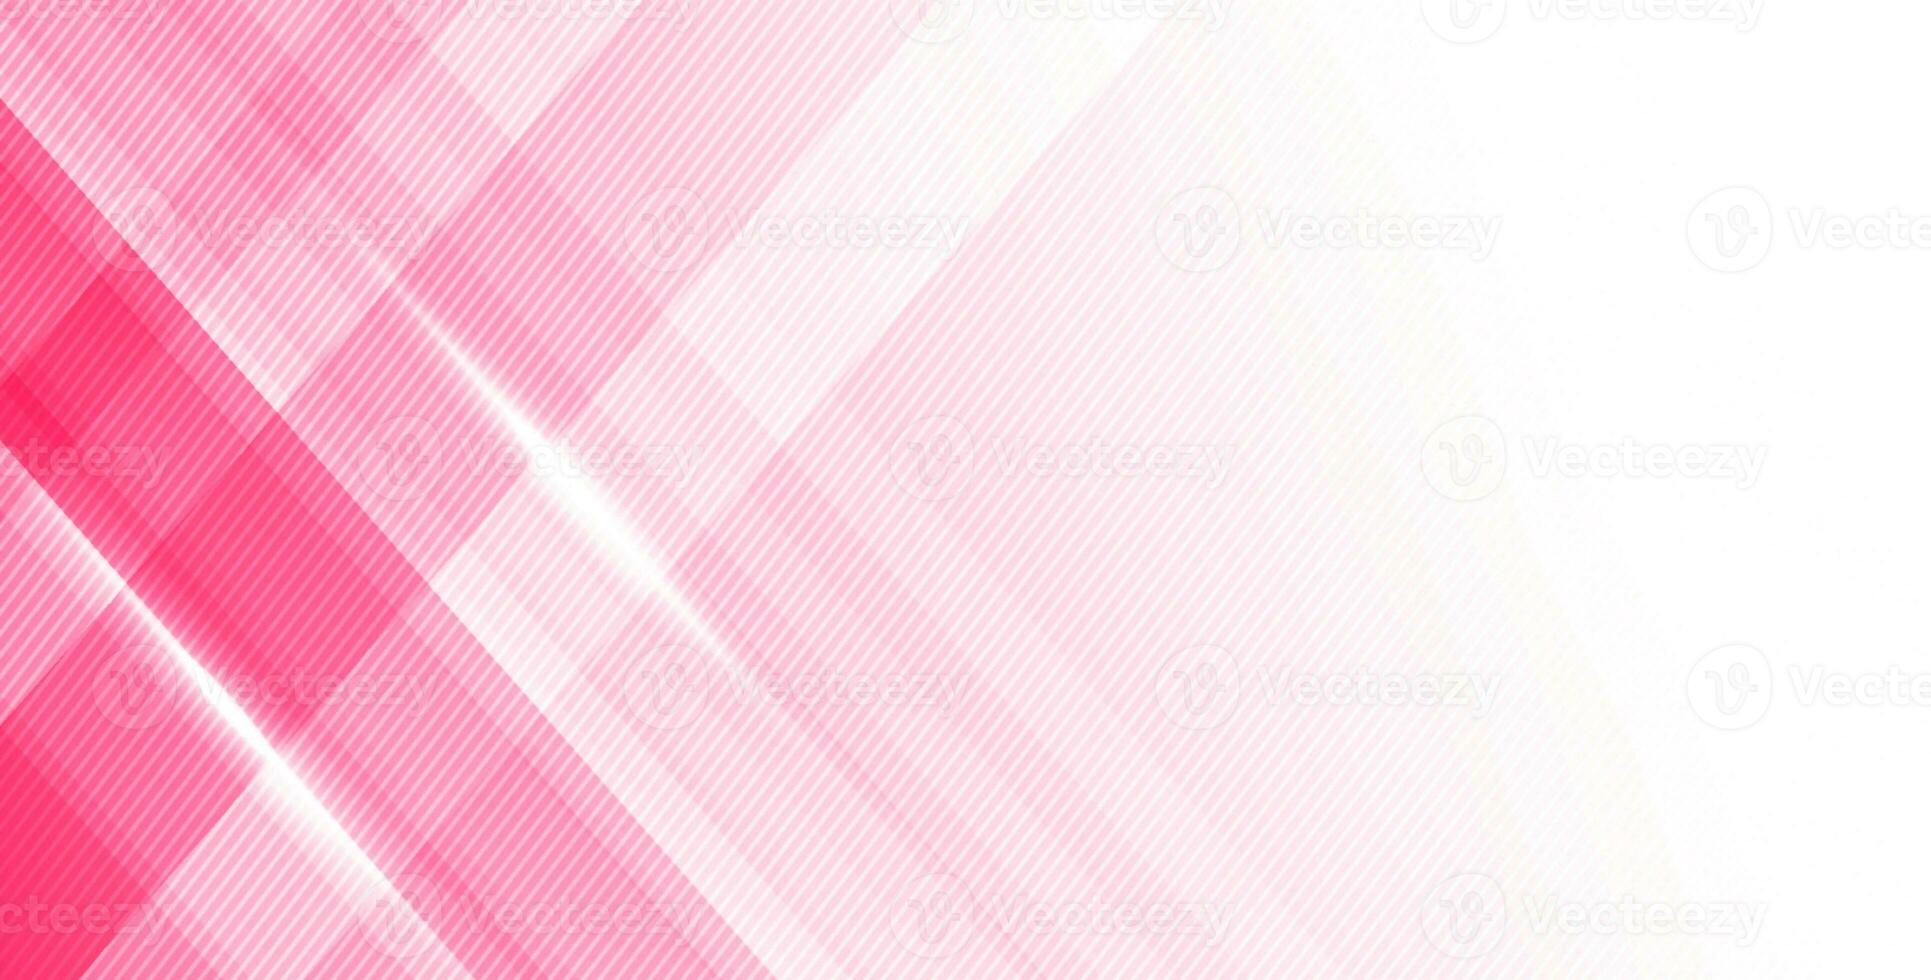 Dark Pink Modren Background photo